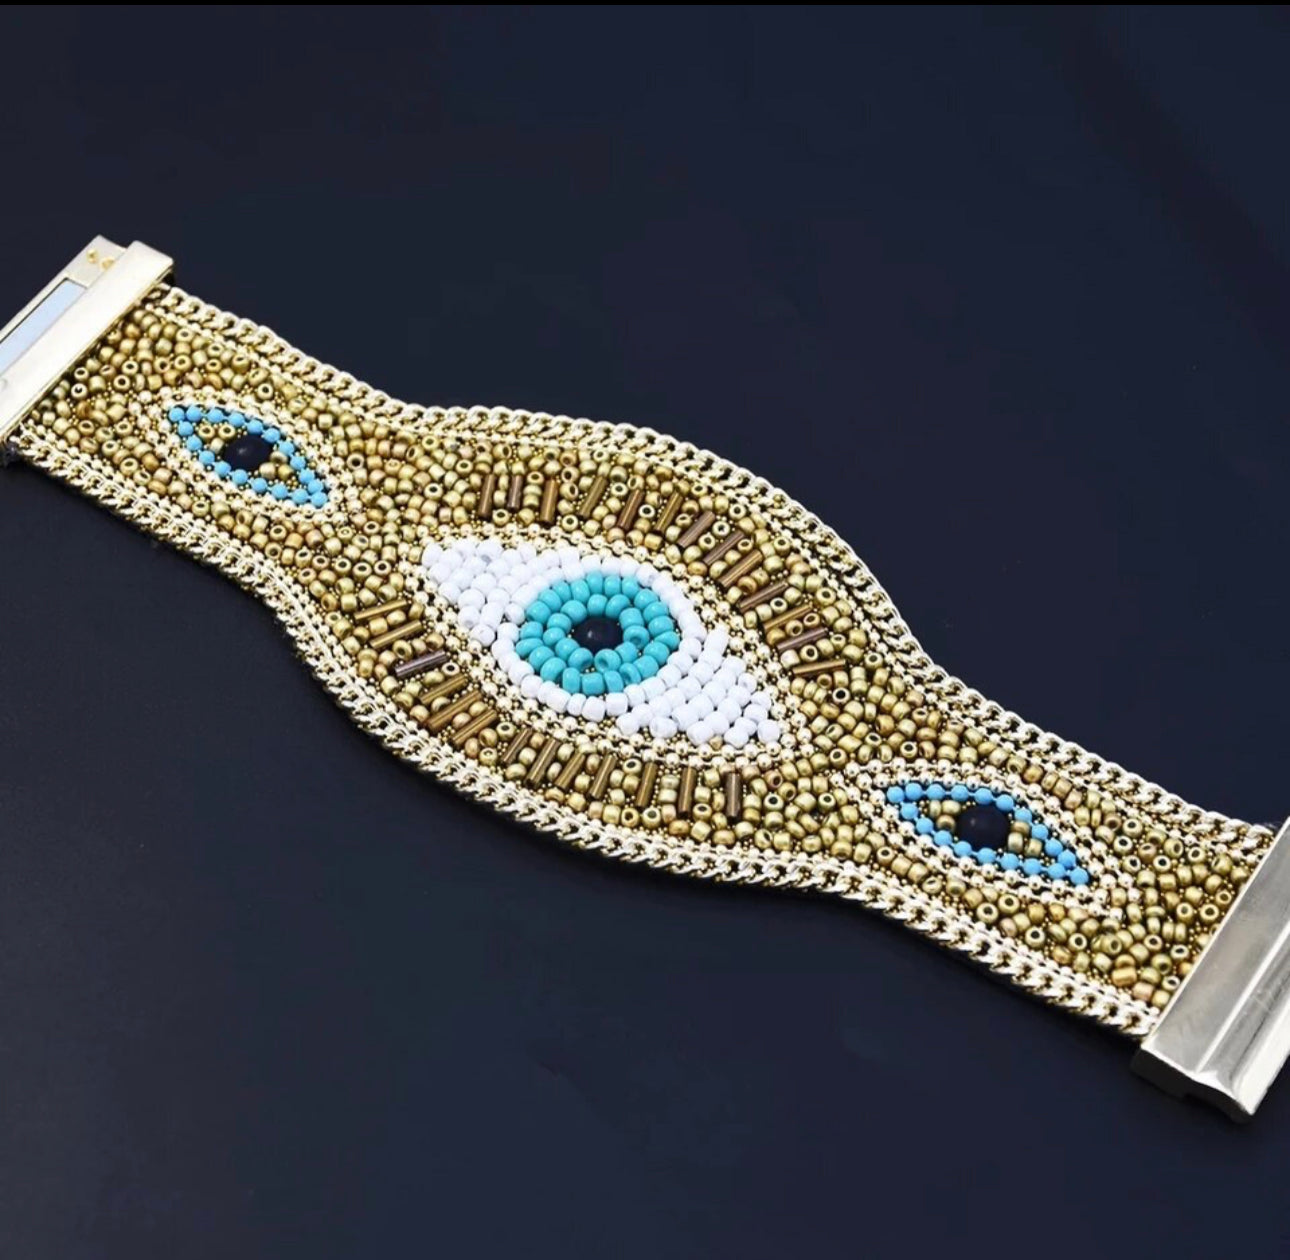 Erika Williner Designs - Evil Eye Beaded Bracelet